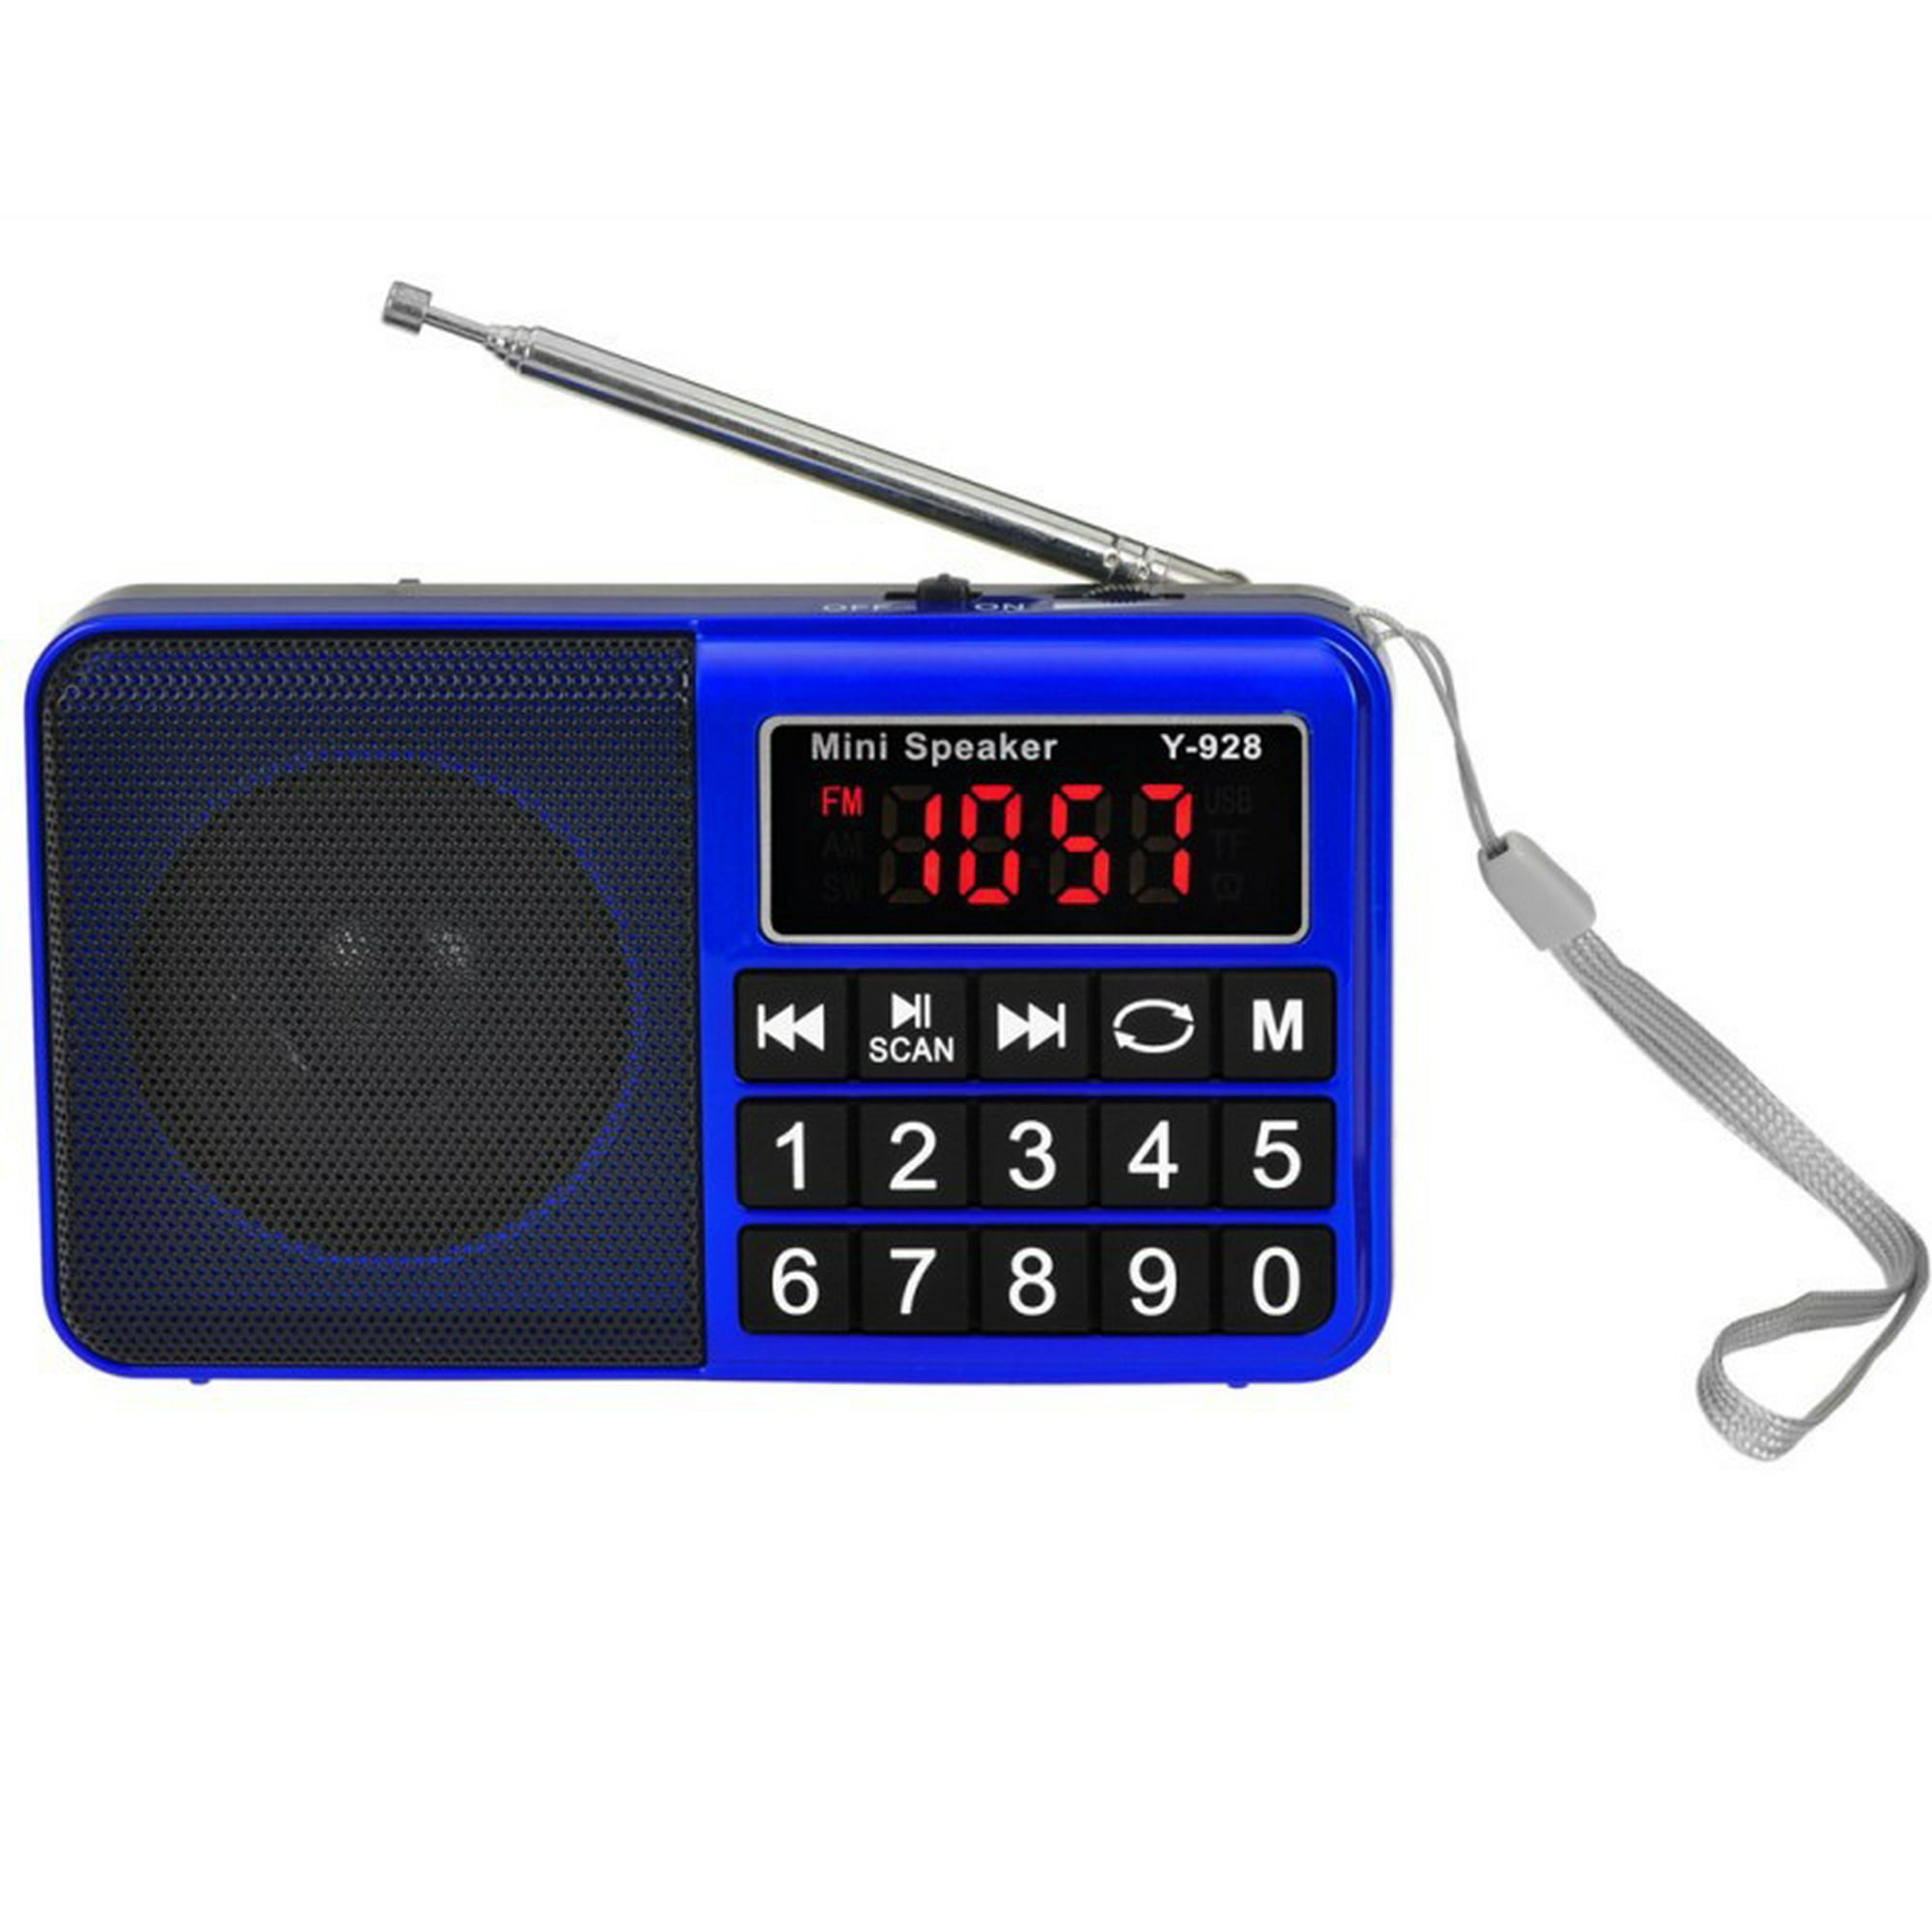 Radio Multibanda K603 Radio Digital Reproductor De Mp3 Altavoz Pantalla Lcd  Grabadora De Bolsillo Compatible Con Bluetooth